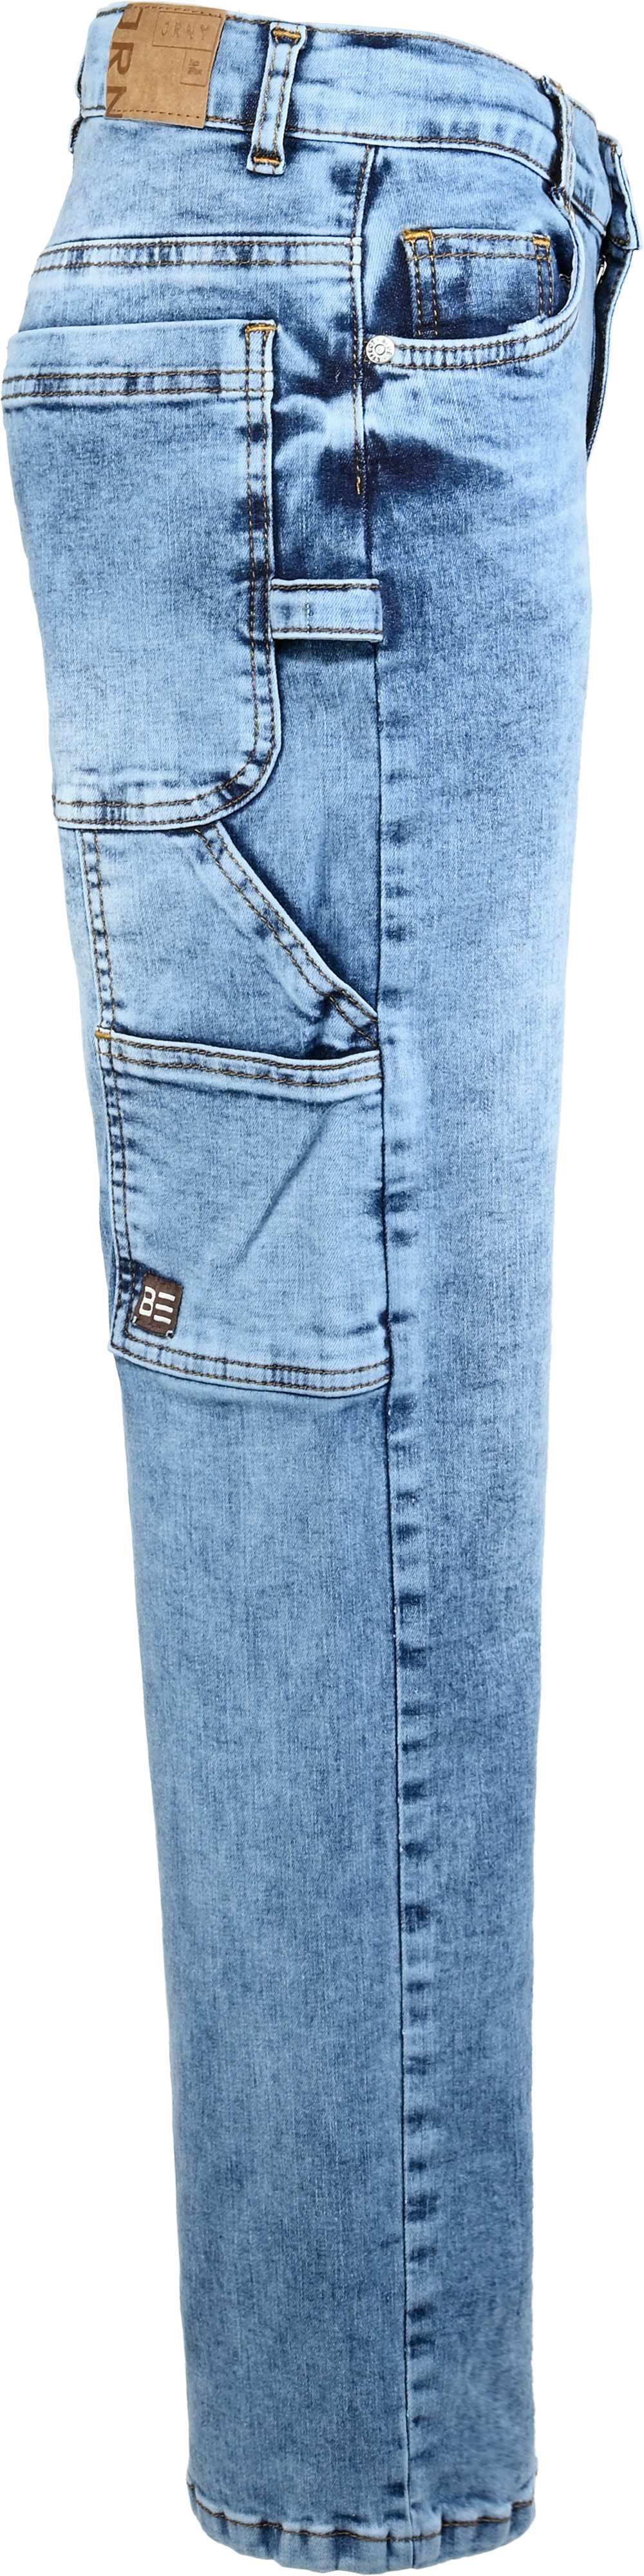 2856-NOS Boys Baggy Jeans Workerstyle, verfügbar in Slim,Normal